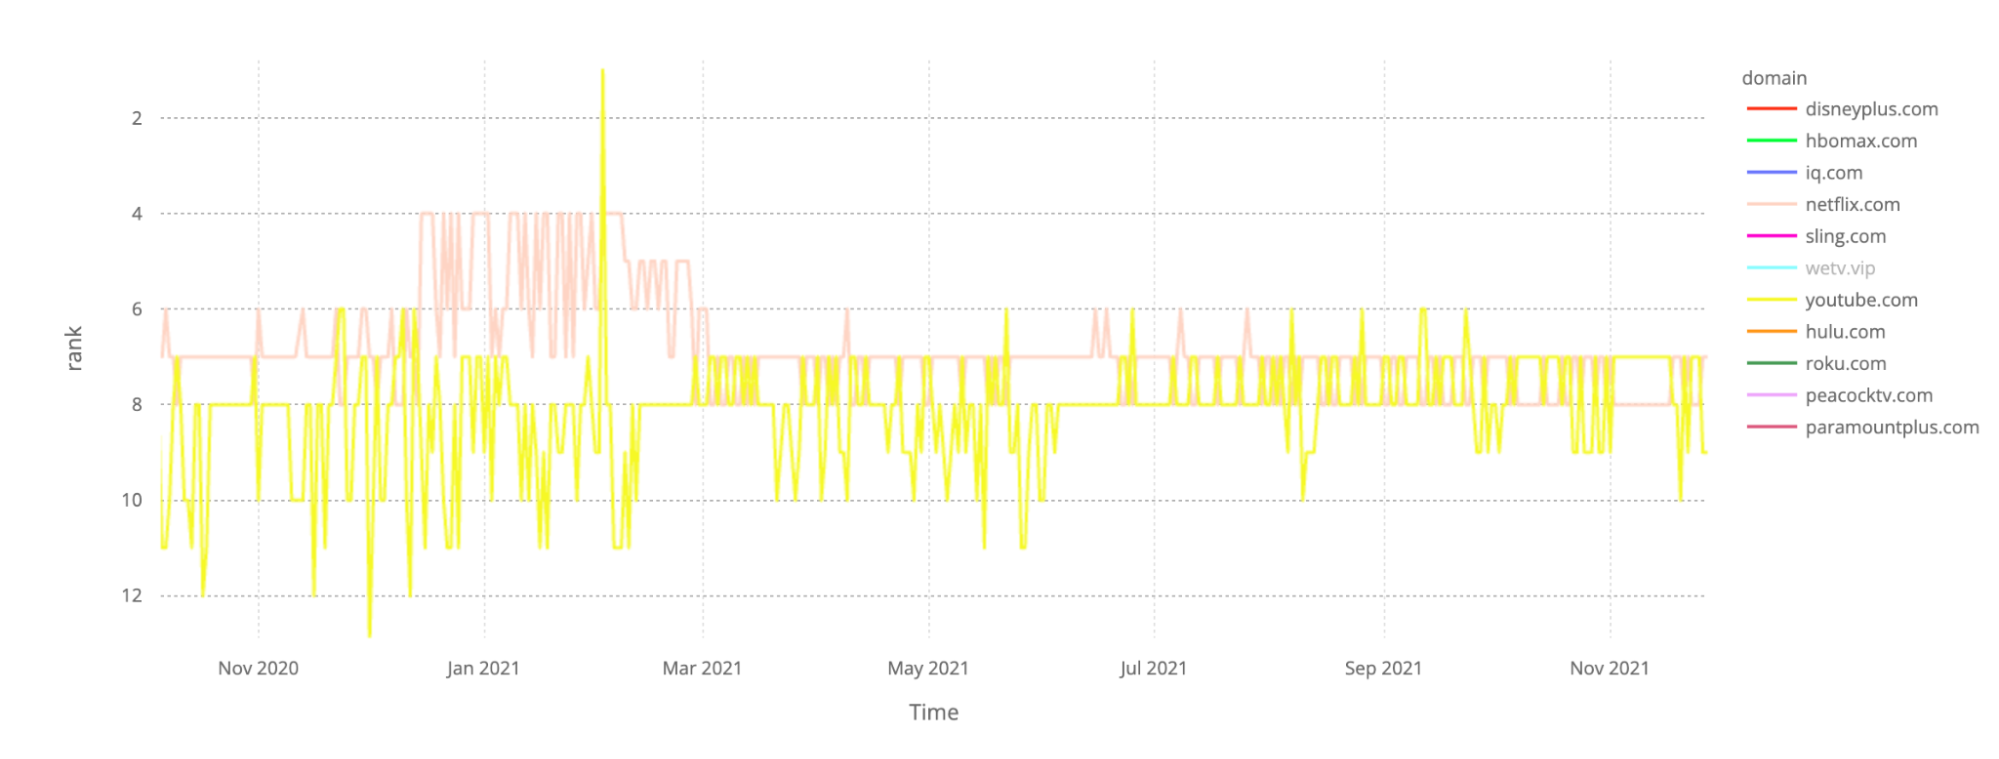 チャートでNetflix.com、ほとんどの日でより支配的な、ピンクであり、YouTube.com チャートでは黄色の